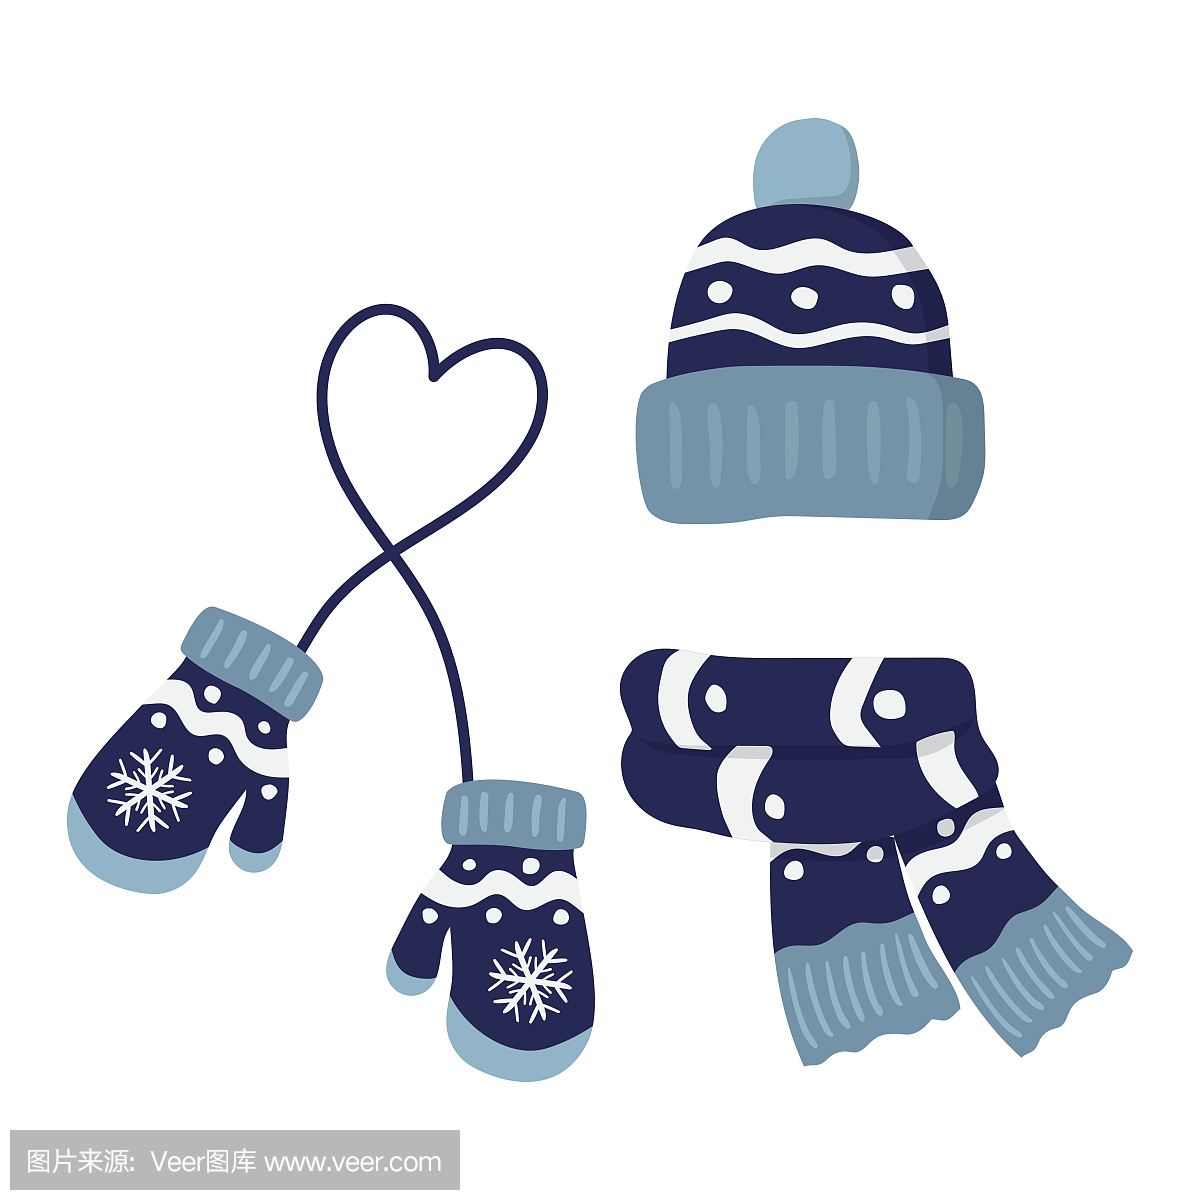 冬季针织手套,帽子和疤痕,设置为蓝色